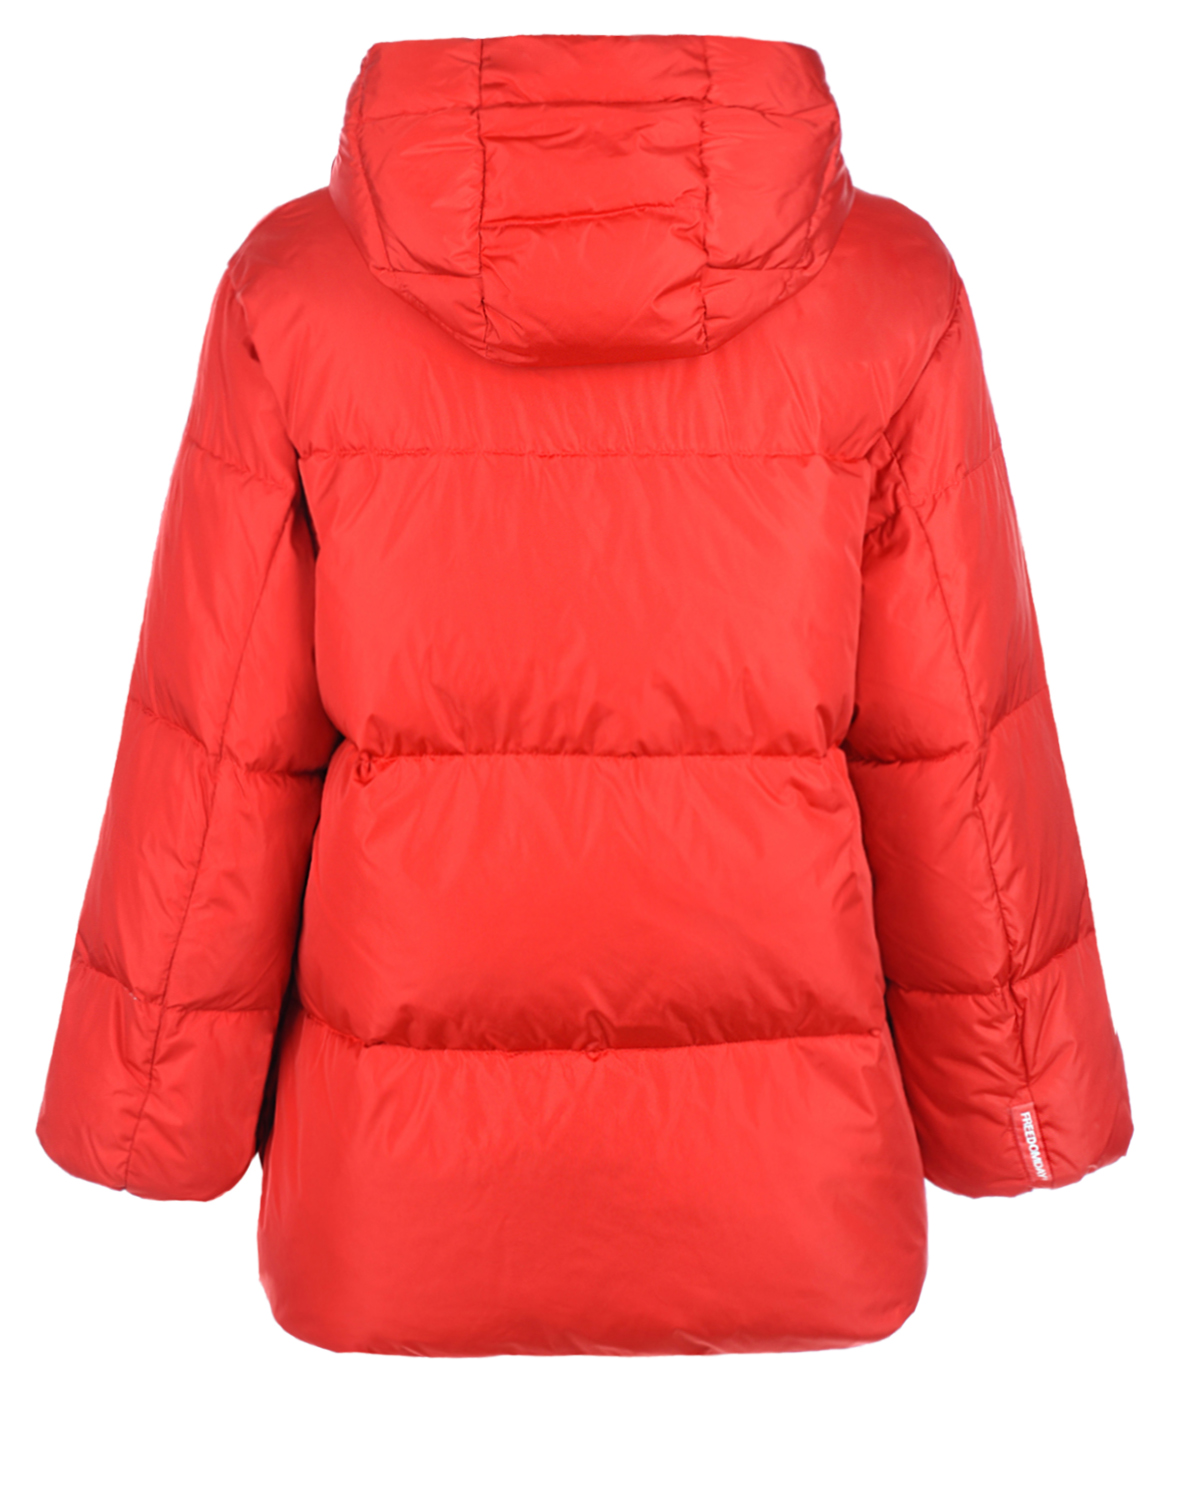 Красная куртка с контрастной подкладкой Freedomday, размер 38, цвет красный - фото 6